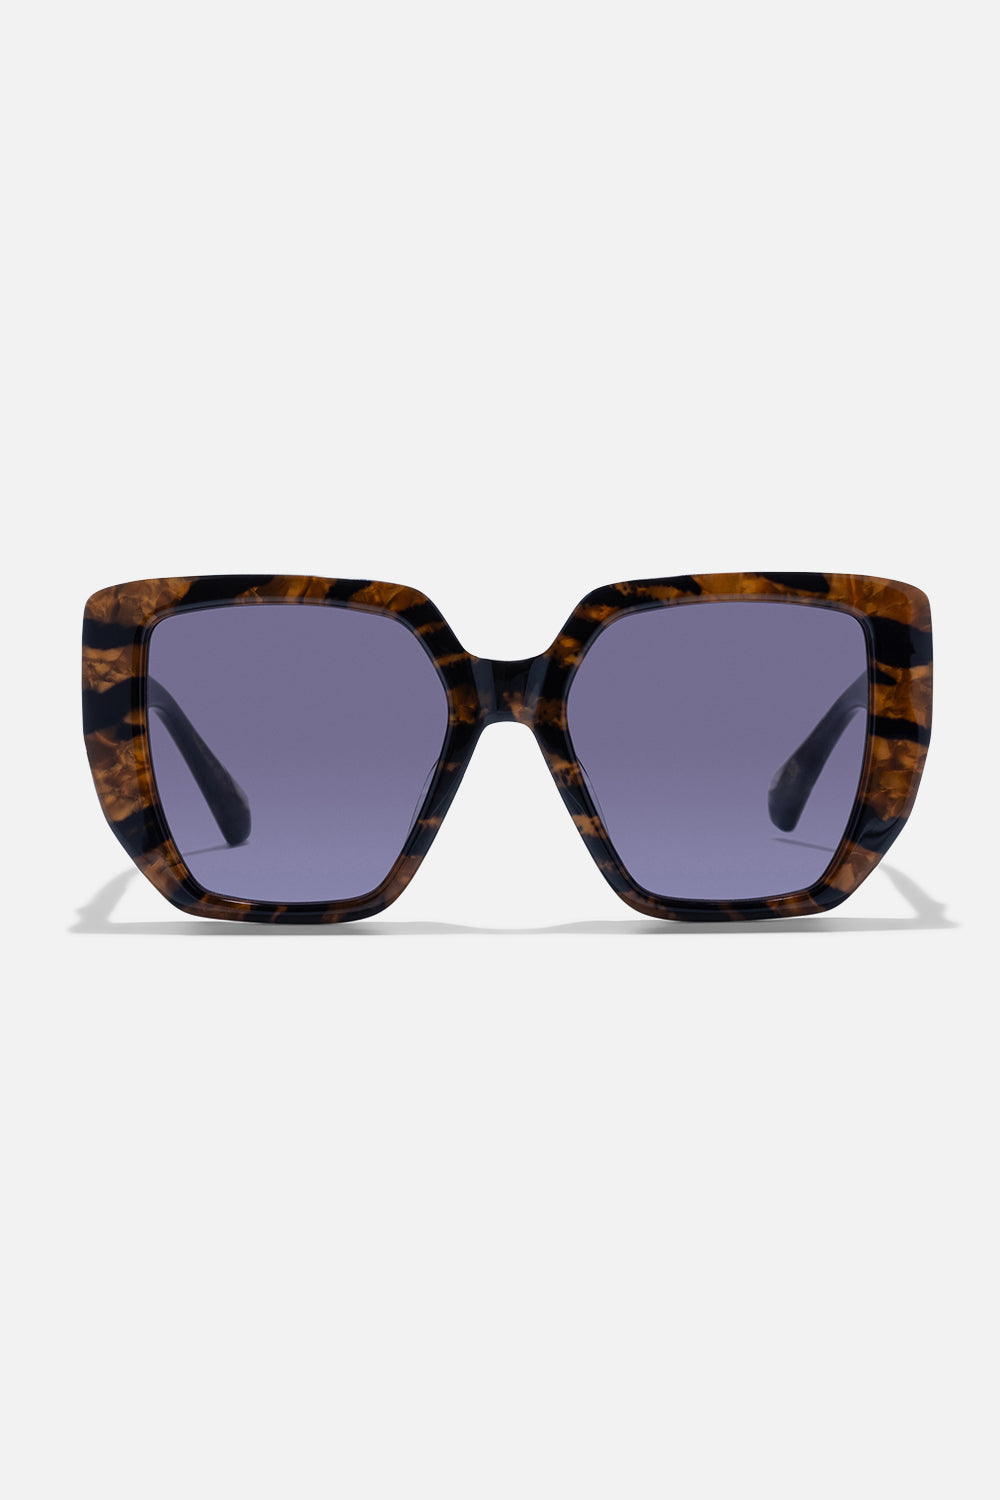 CAMILLA designer animal sunglasses 